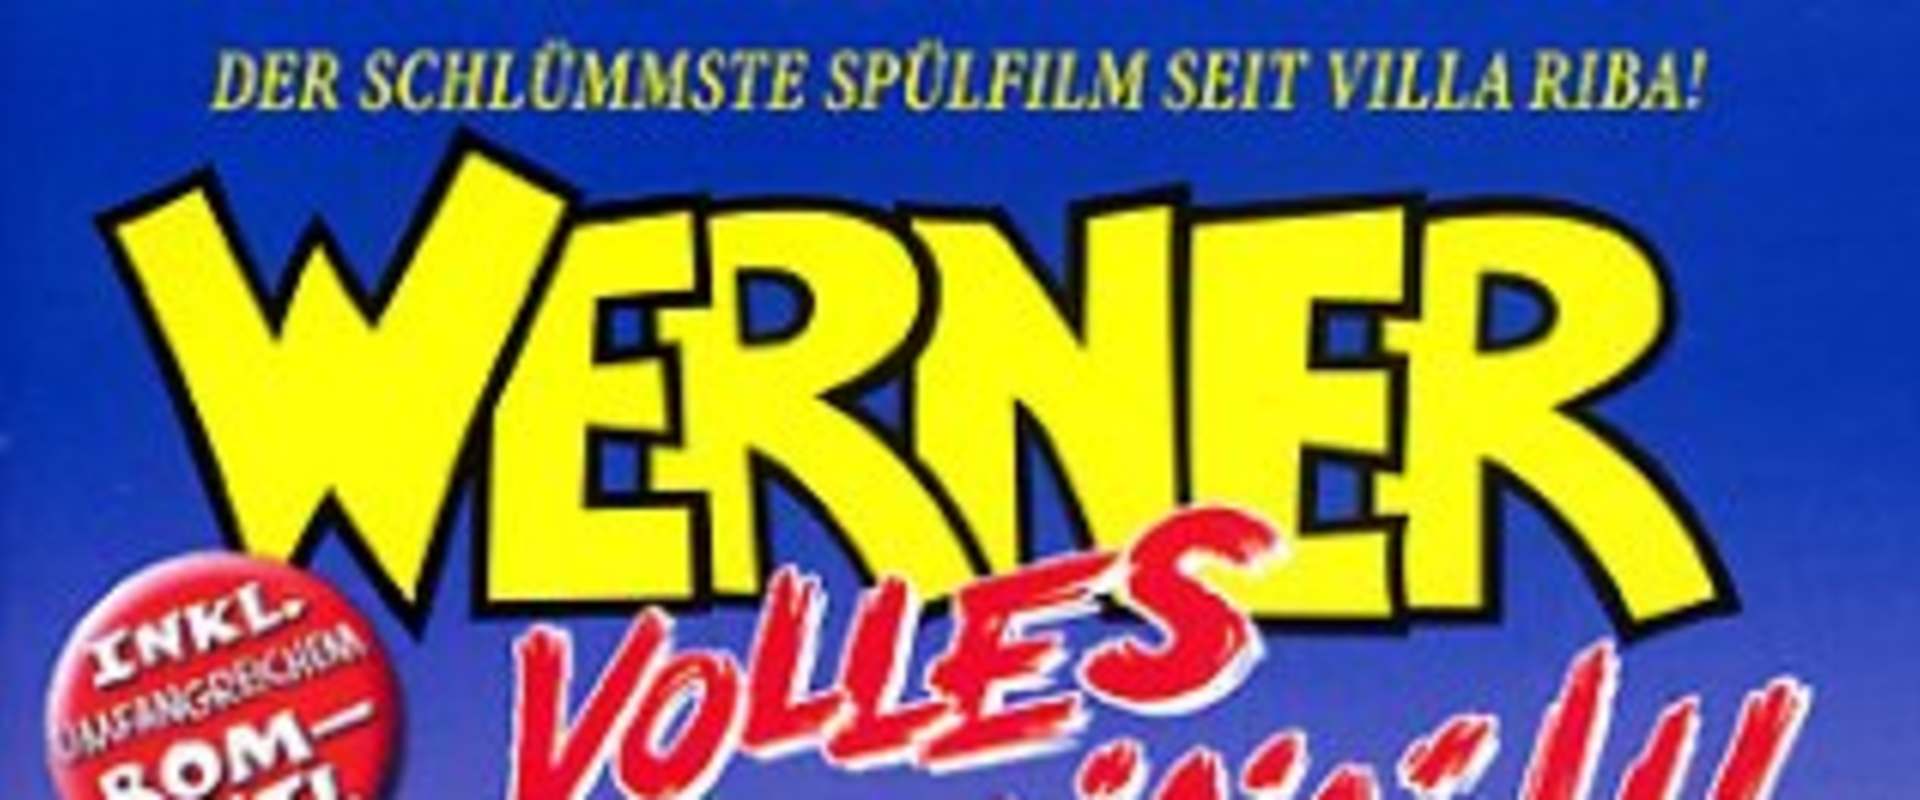 Werner - Volles Rooäää!!! background 2